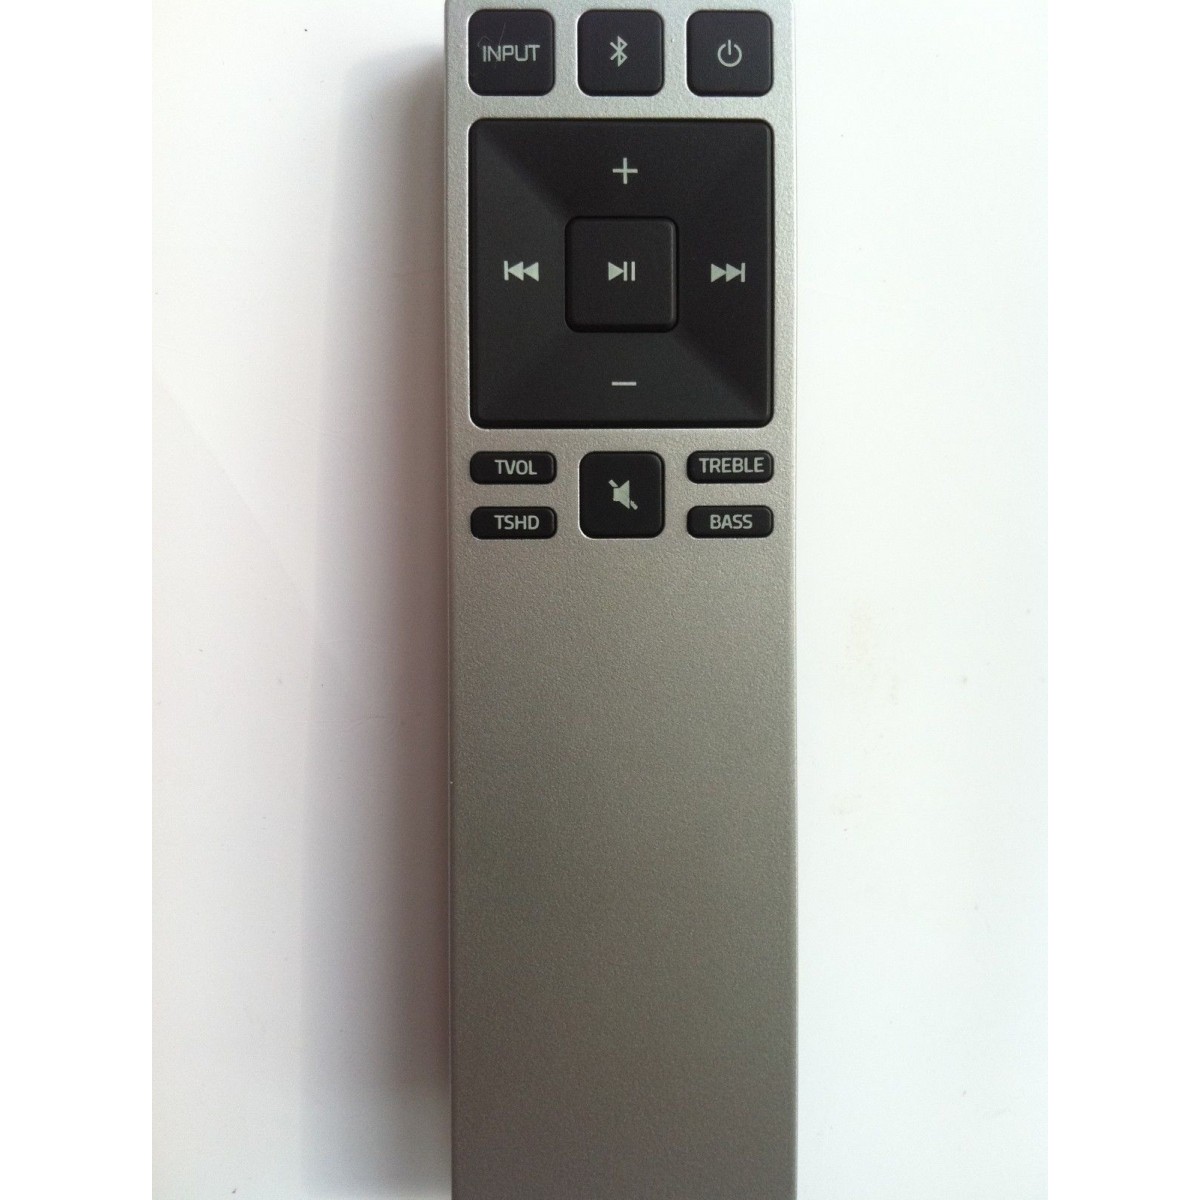 Vizio Xrs321 Sound Bar Remote